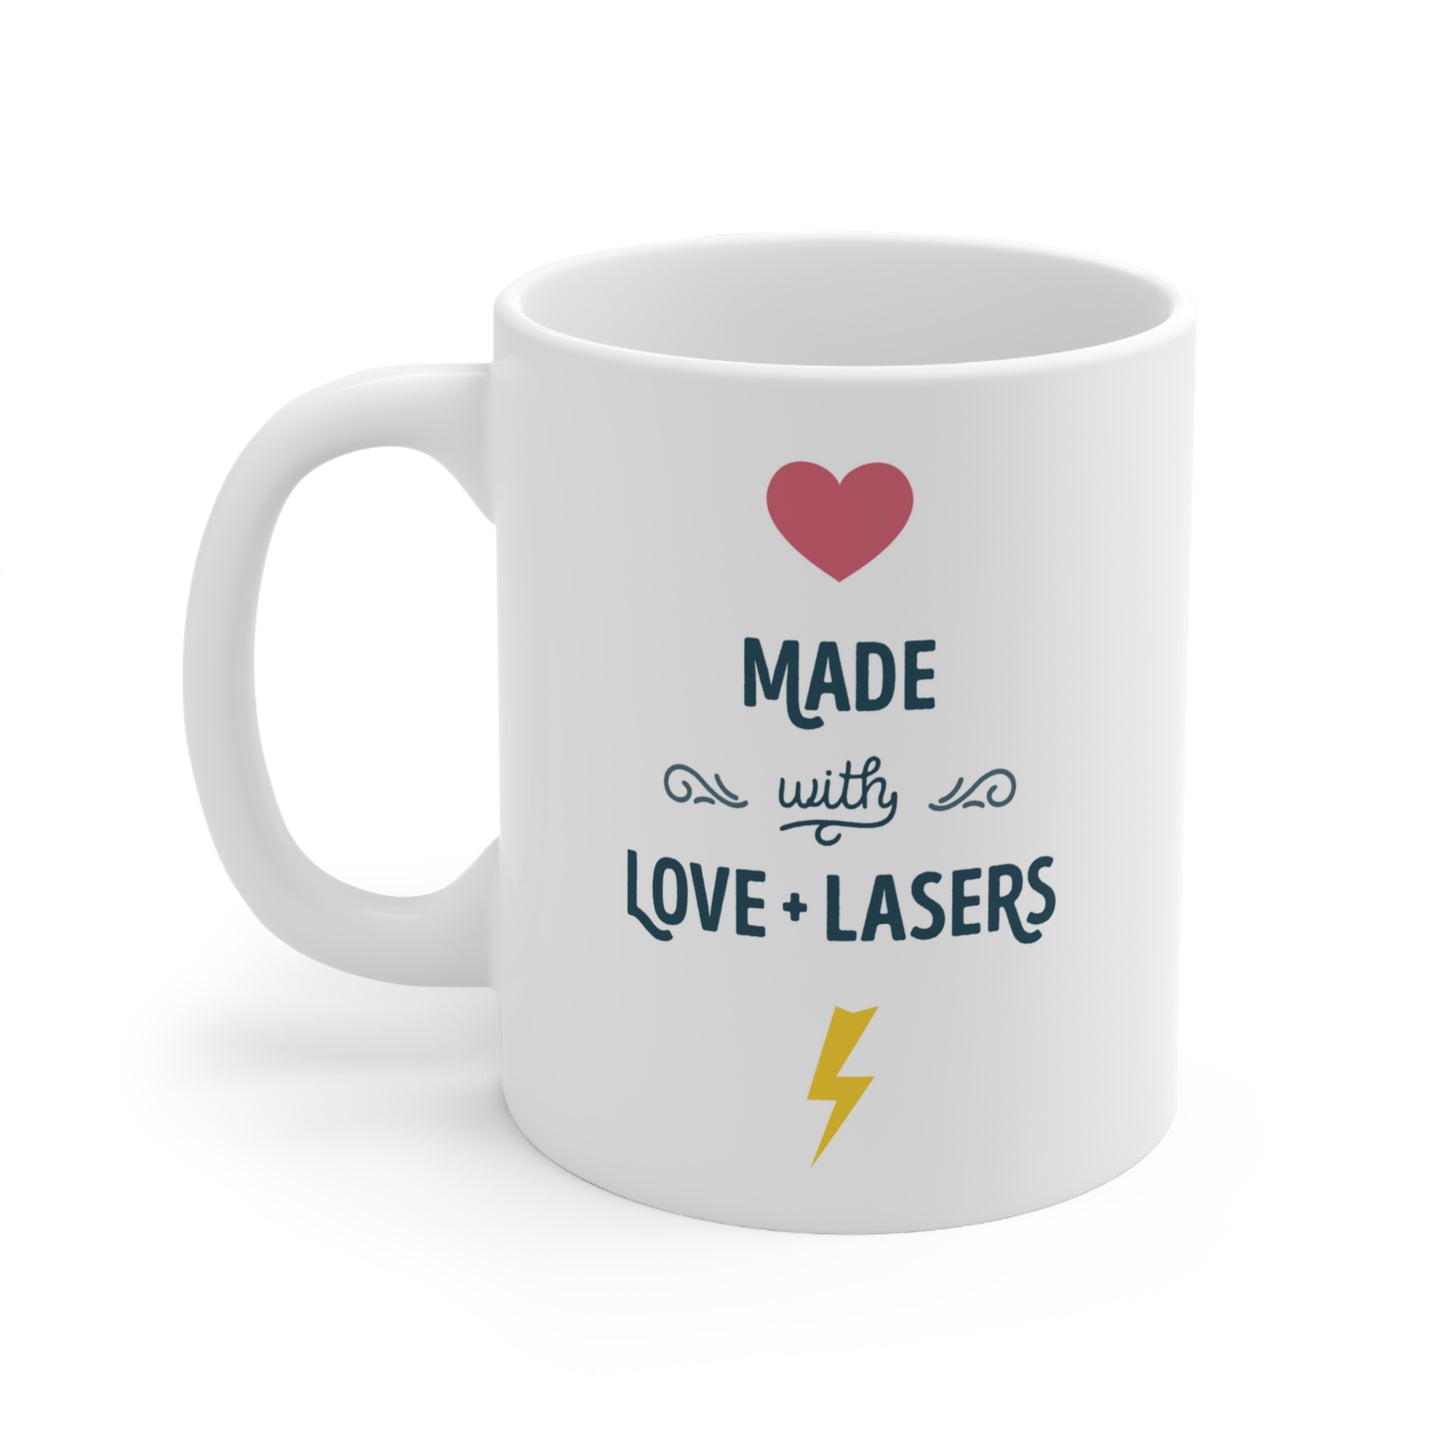 Love + Lasers Ceramic Mug